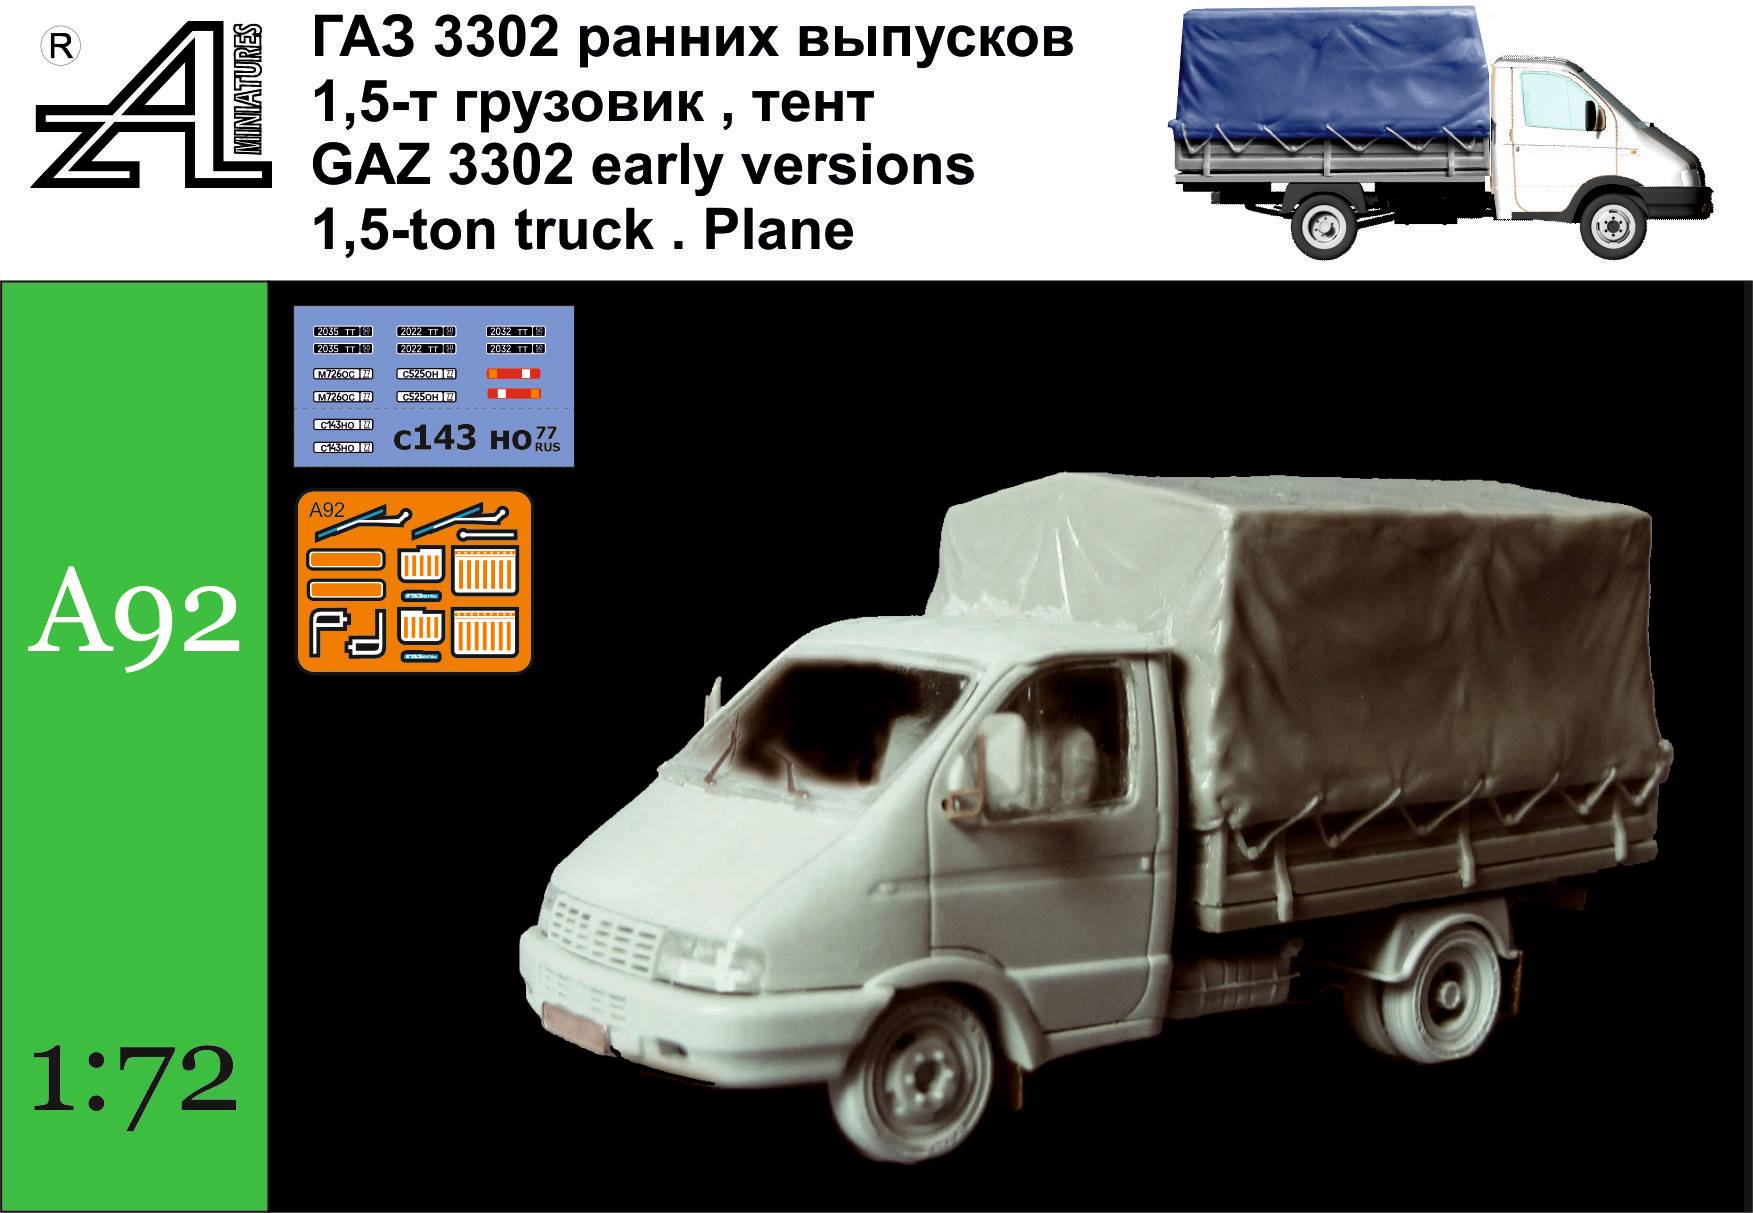 GAZ 3302 "Gazelle" with tarp